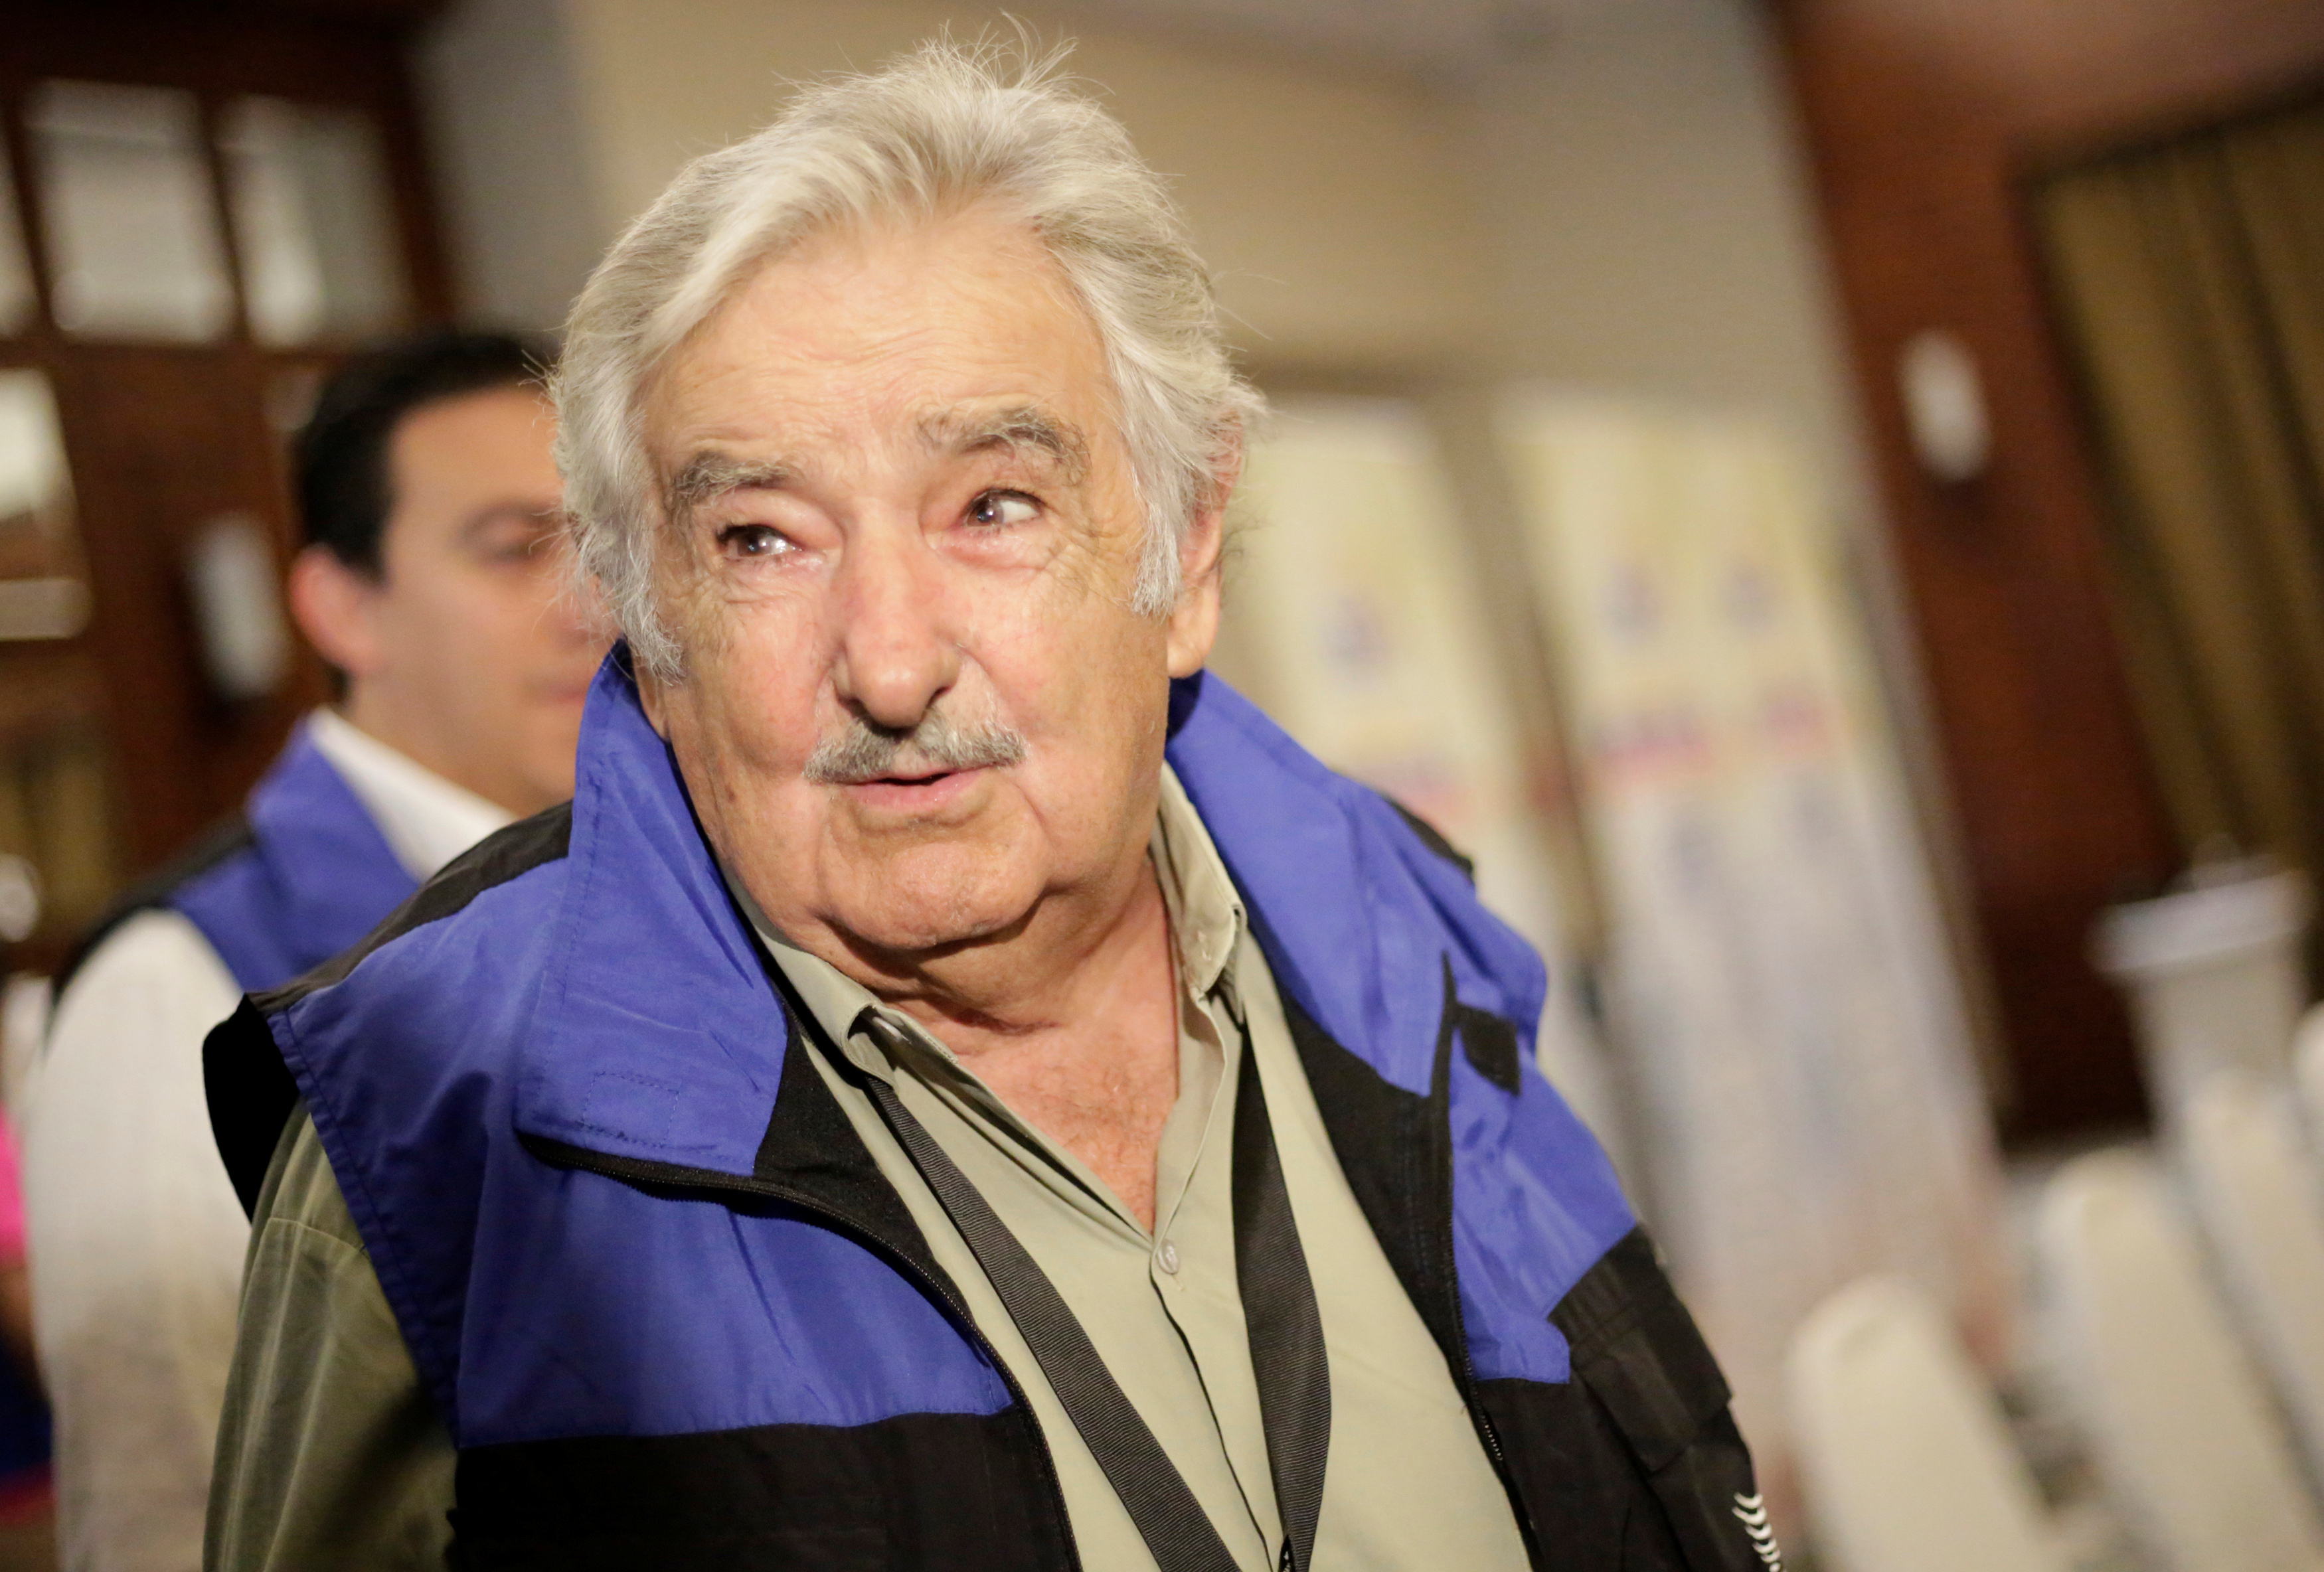 Expresidente Mujica a favor de “elecciones totales” en Venezuela tuteladas por la ONU